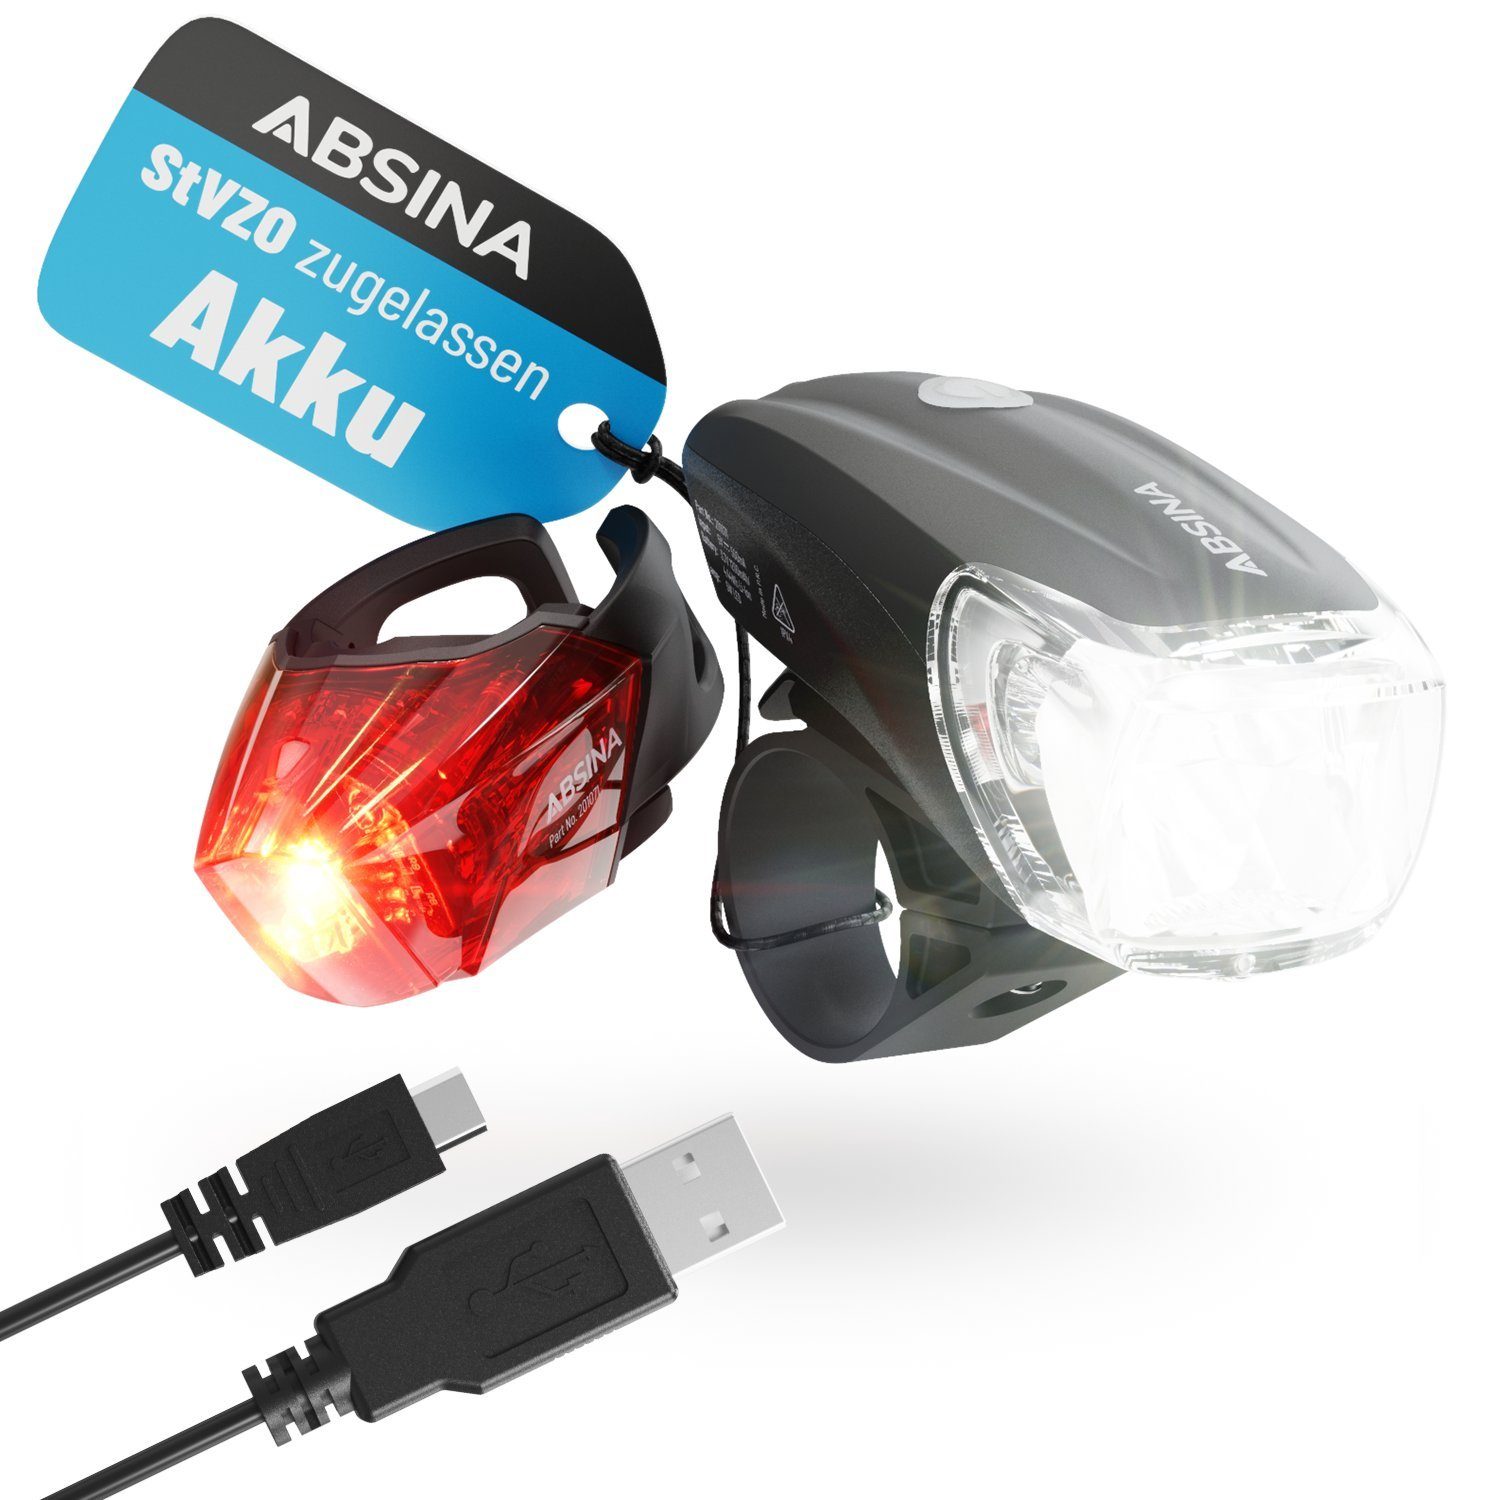 ABSINA Fahrradbeleuchtung »LED Fahrradlicht Set USB aufladbar - 100m  Reichweite, 180 Lumen & 50 Lux - Fahrradbeleuchtung Set StVZO zugelassen -  Fahrradlampe vorne & hinten, Fahrrad Lichter LED Set, Fahrrad Licht Set«